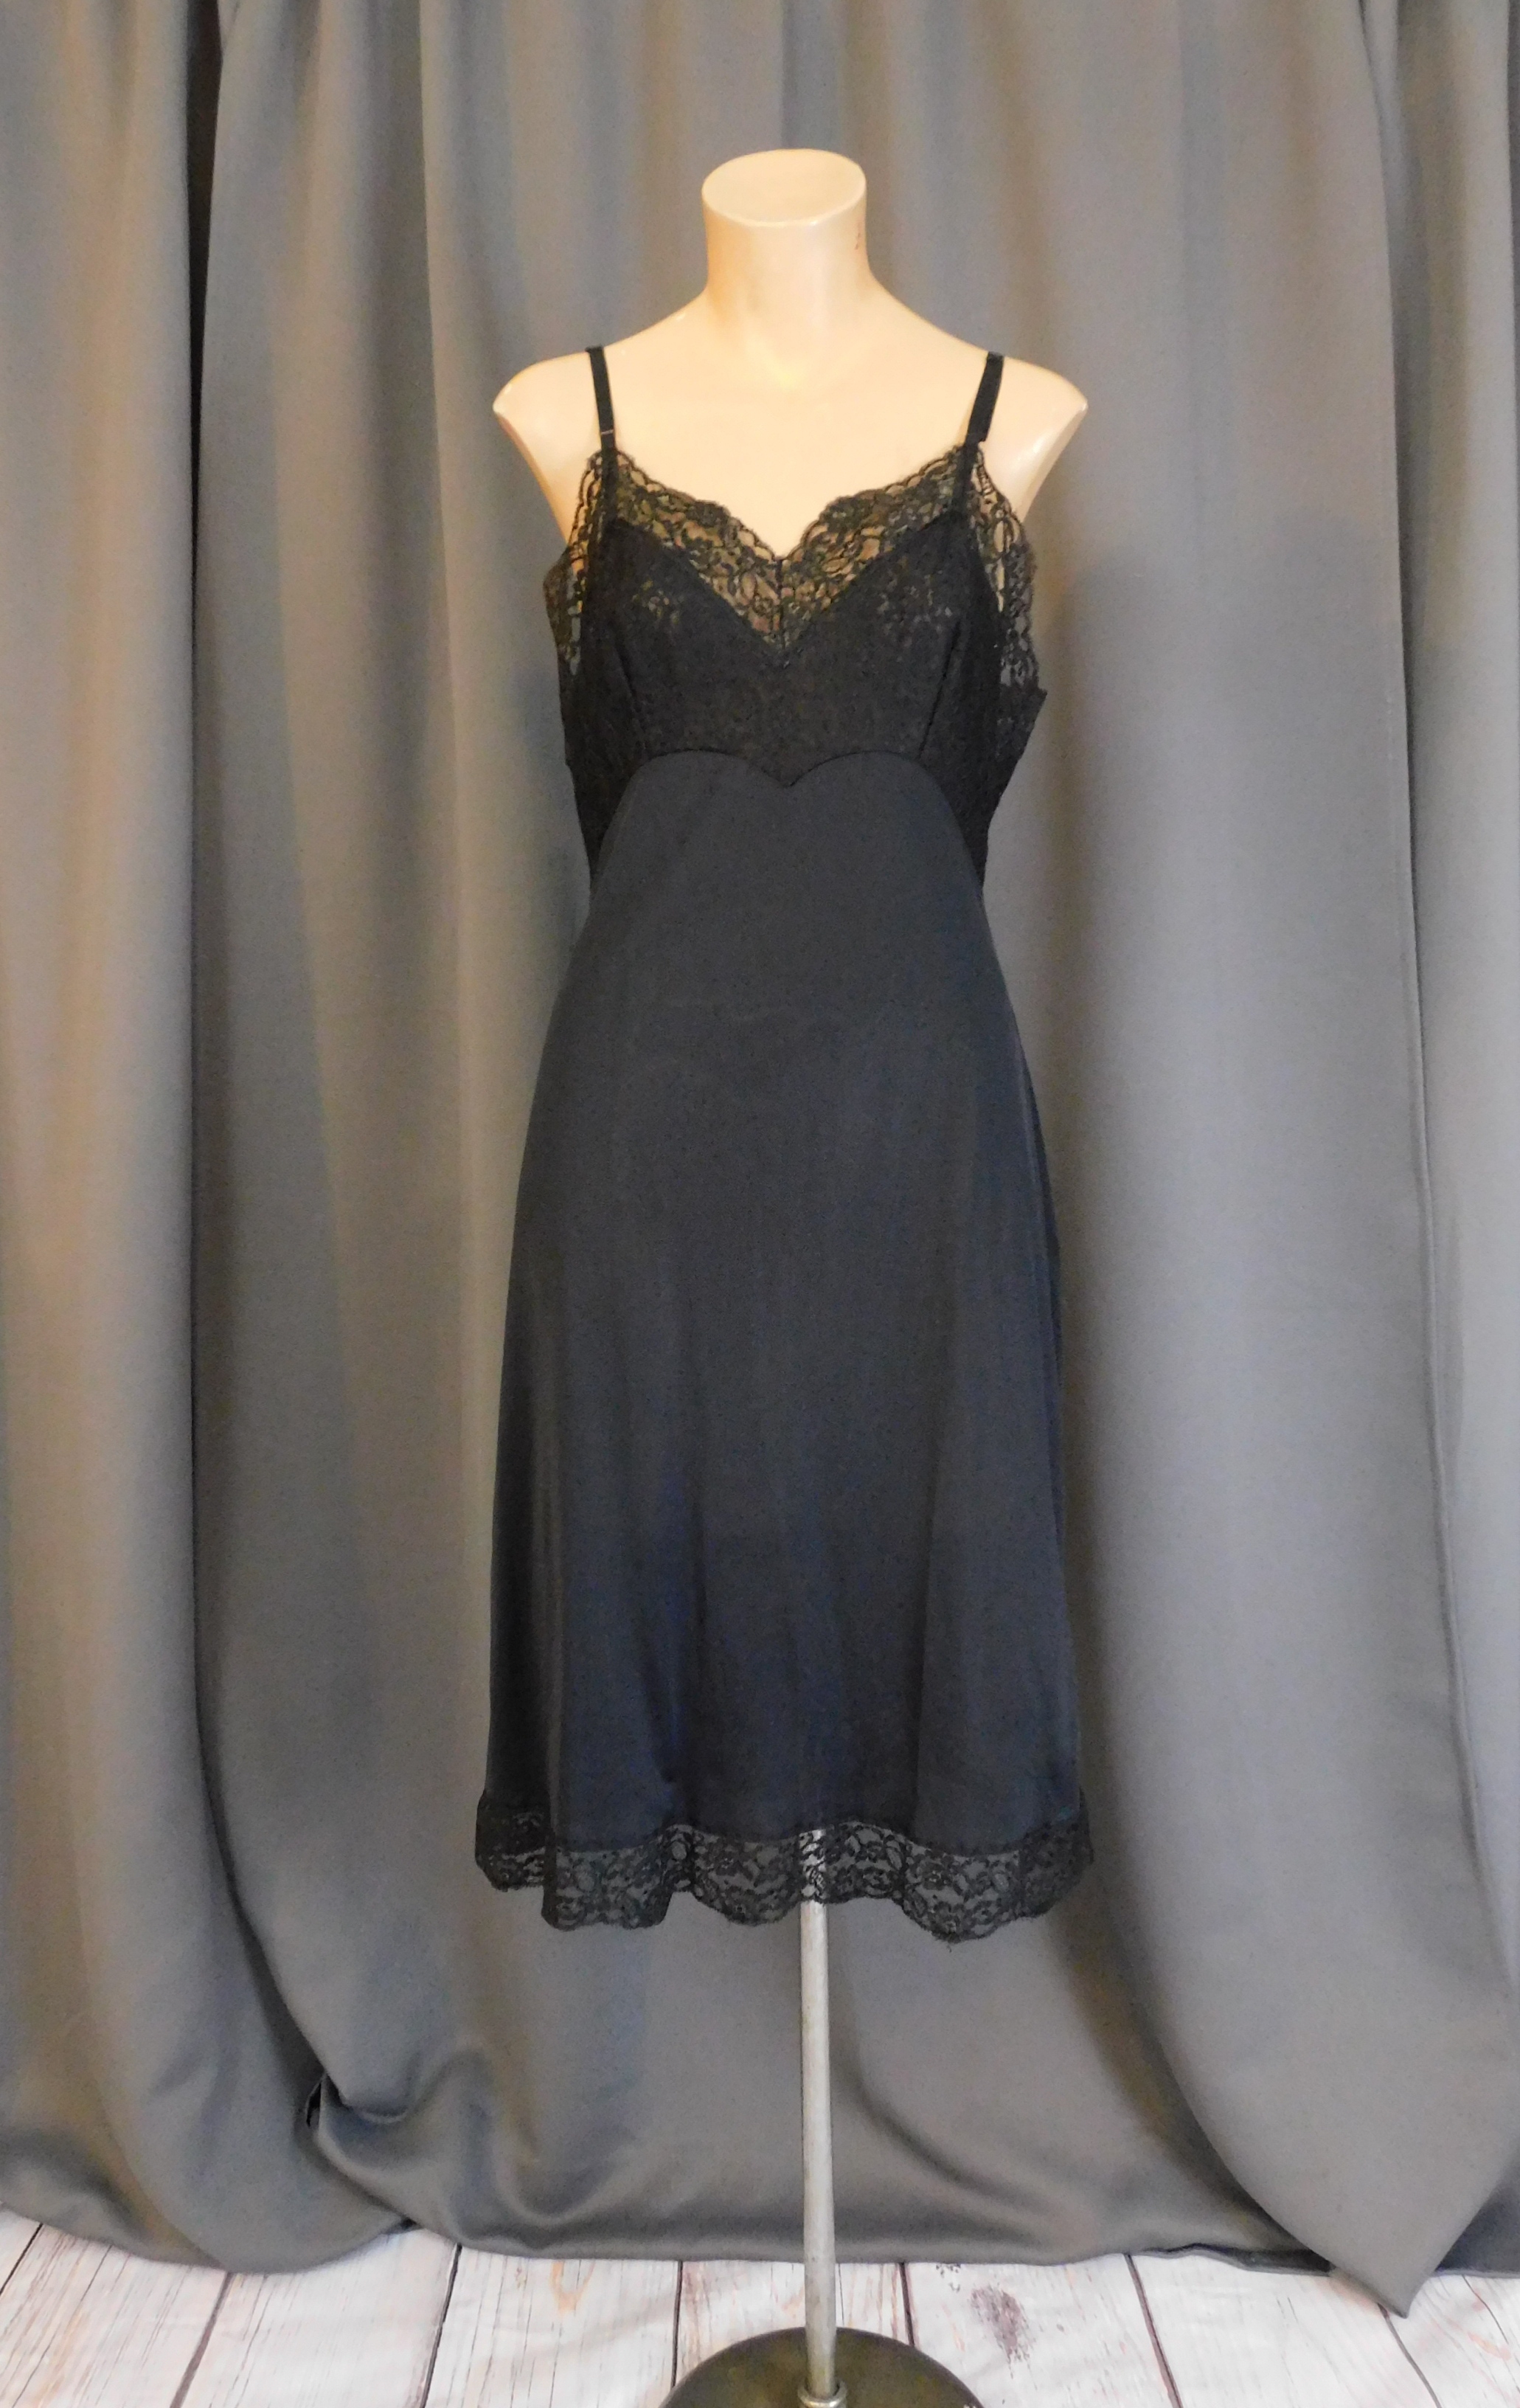 Vintage Black Full Slip with Lace Bodice, Kayser 36 bust 1960s, some fade -  Dandelion Vintage